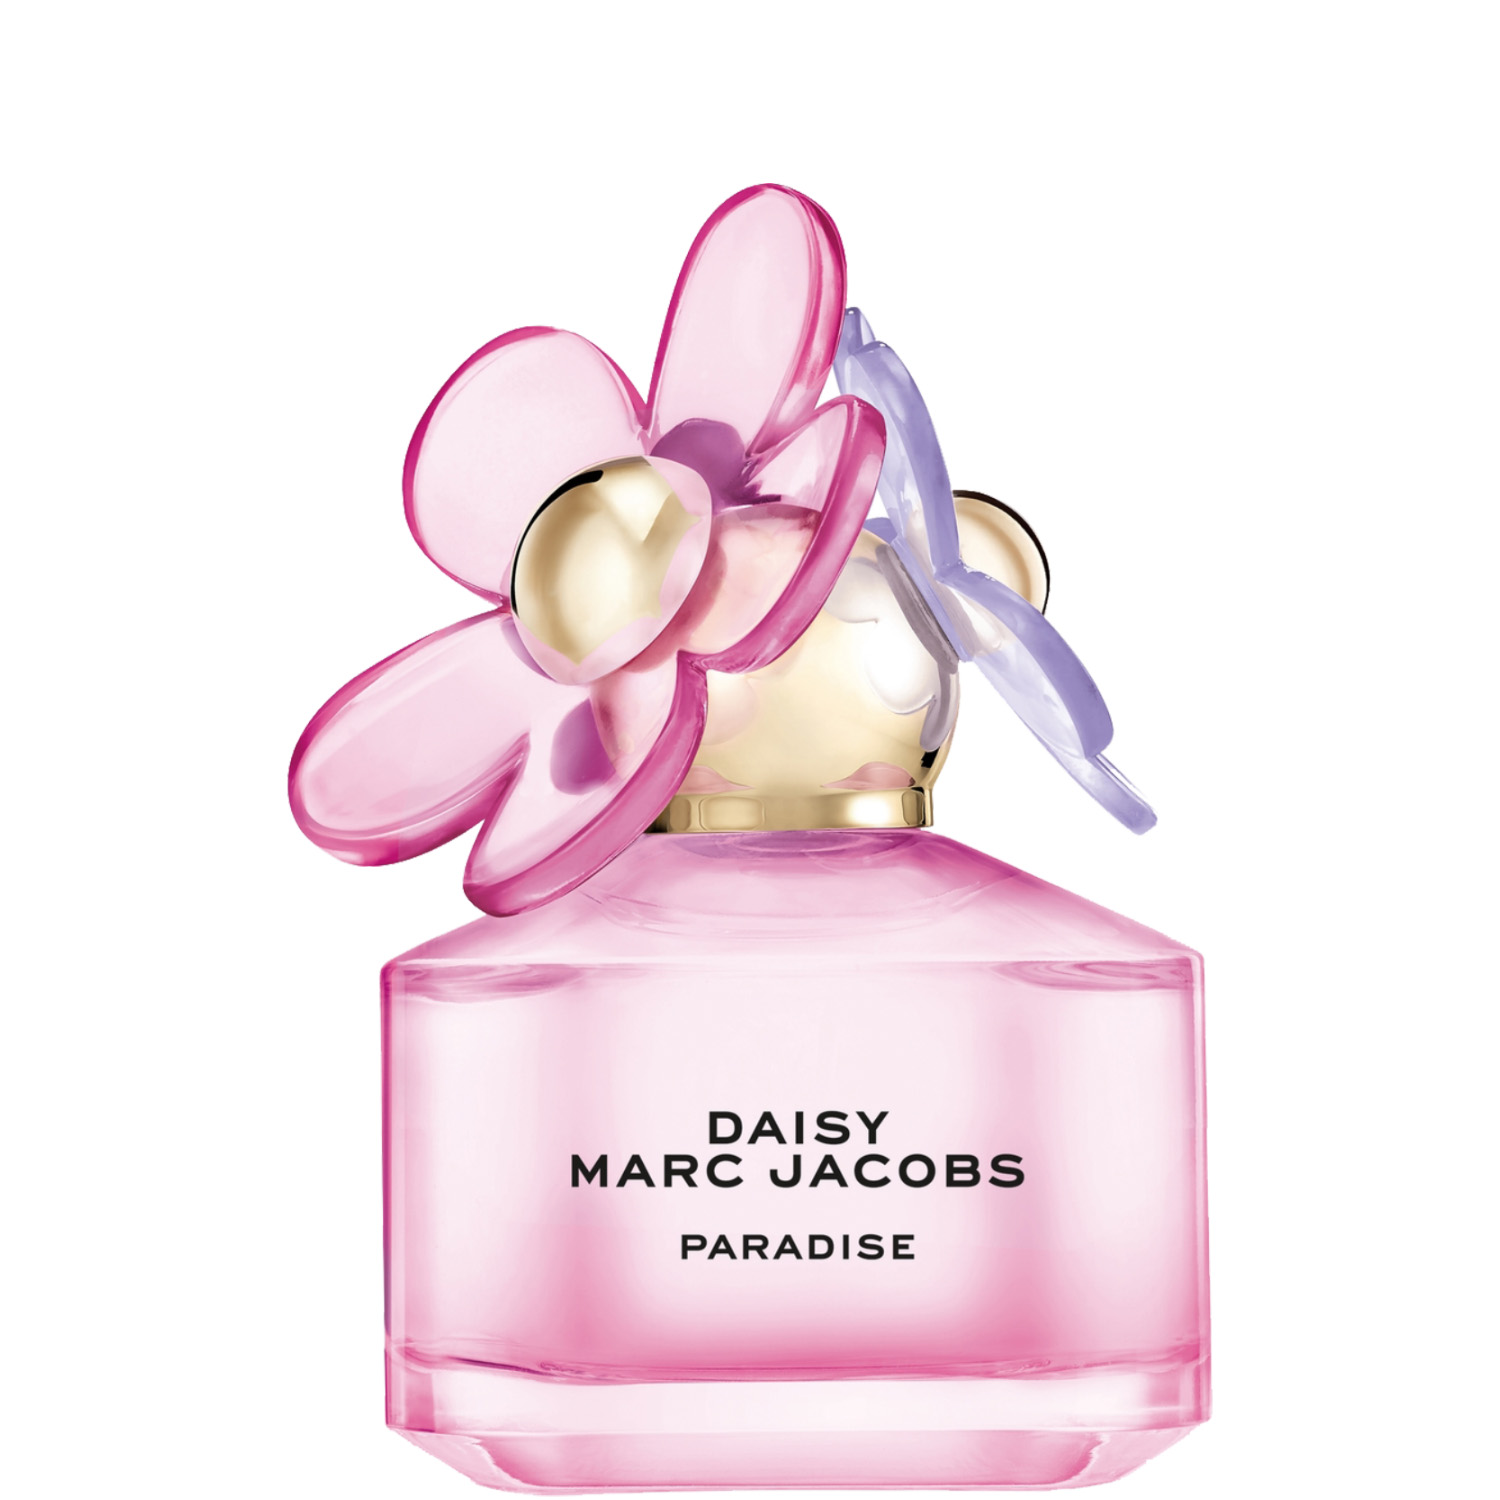 Marc Jacobs Daisy Paradise Limited Edition Eau de Toilette 50ml